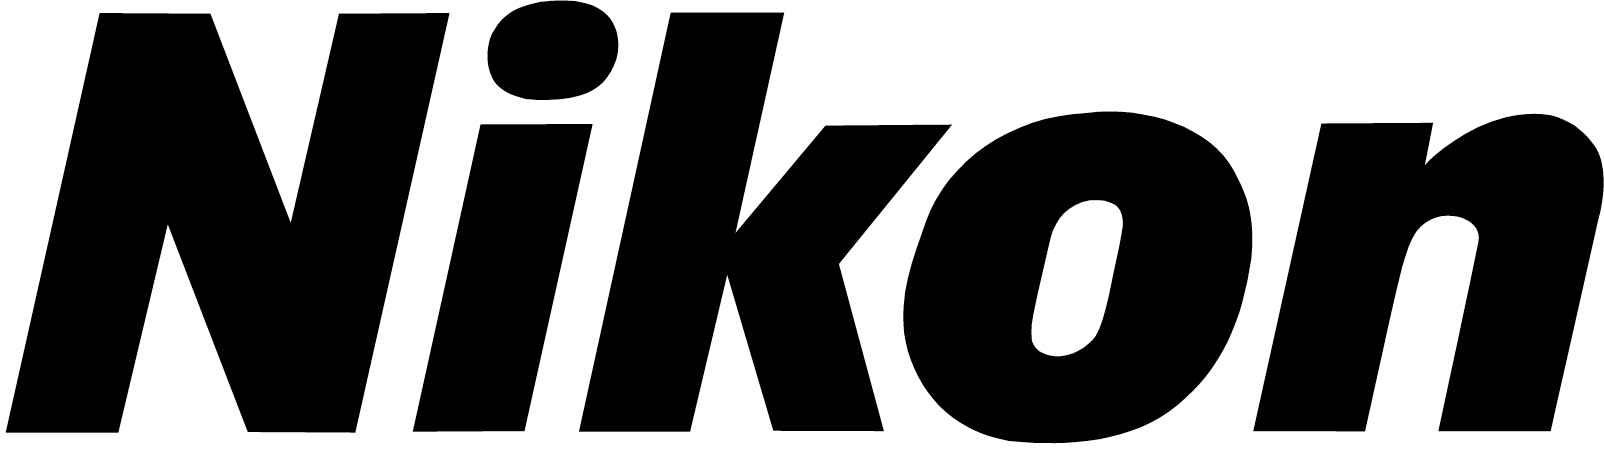 Prismáticos Nikon Aculon A211 12×50 – Shopavia